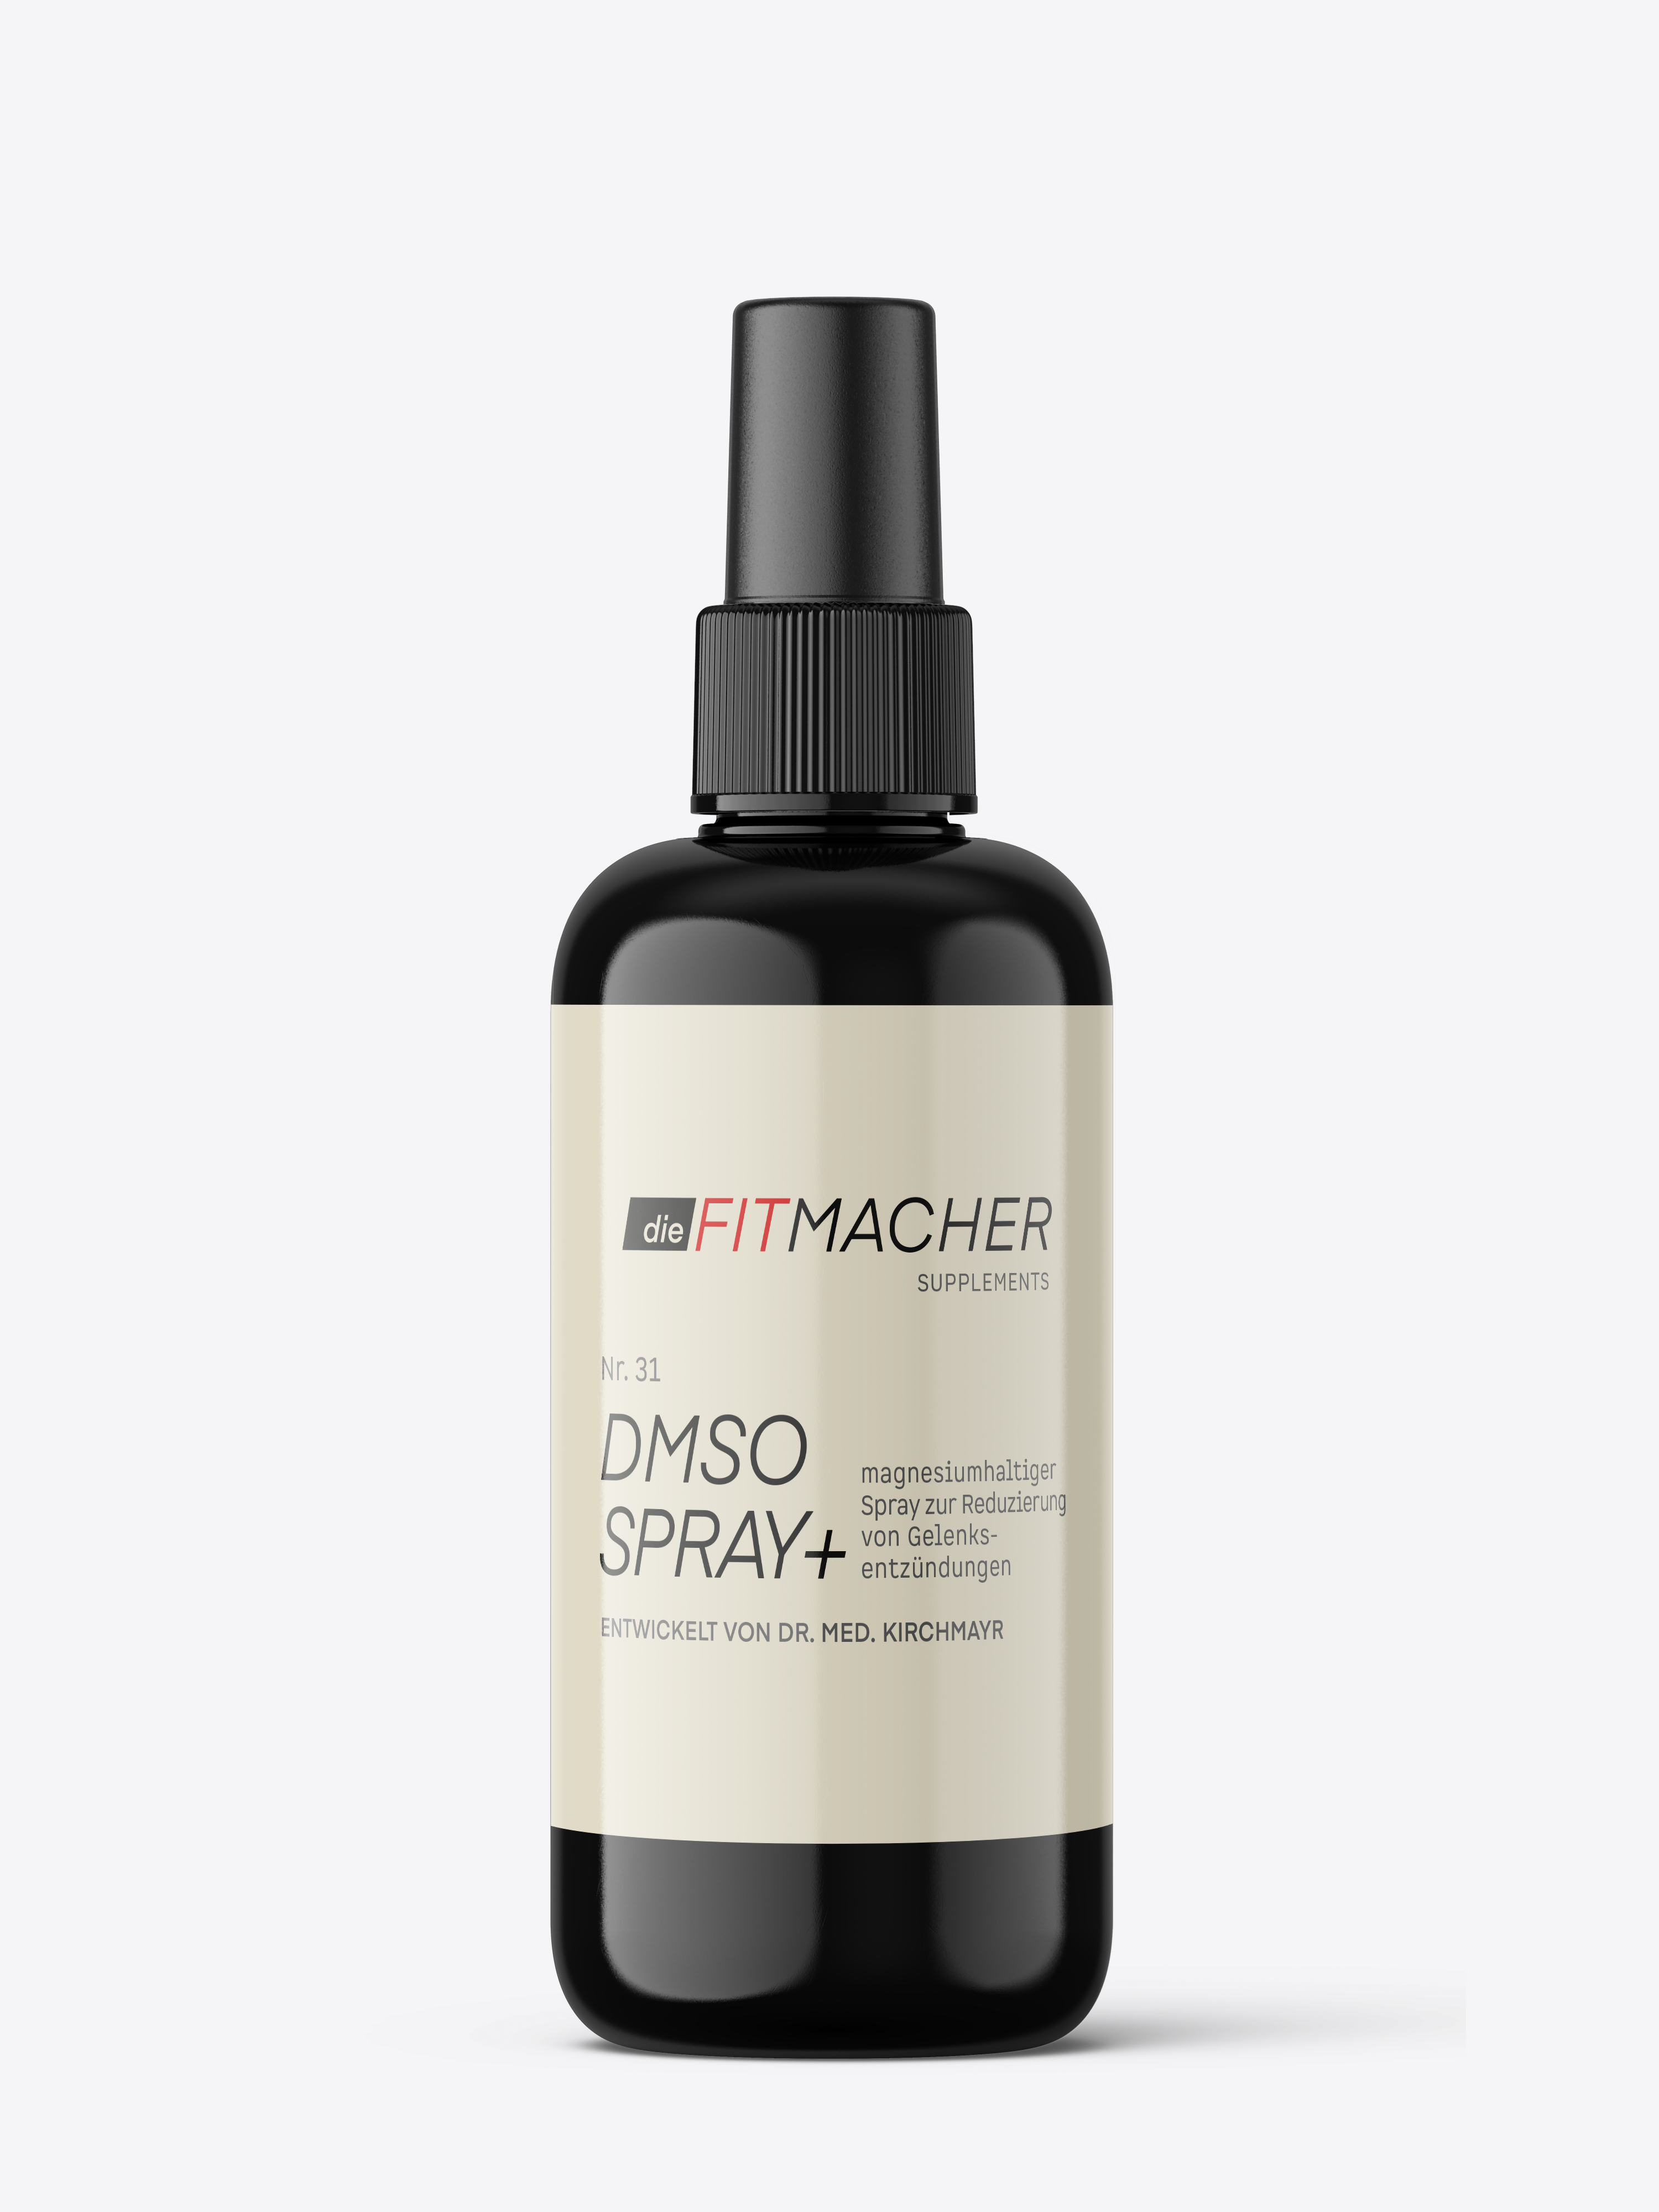 DMSO Spray+